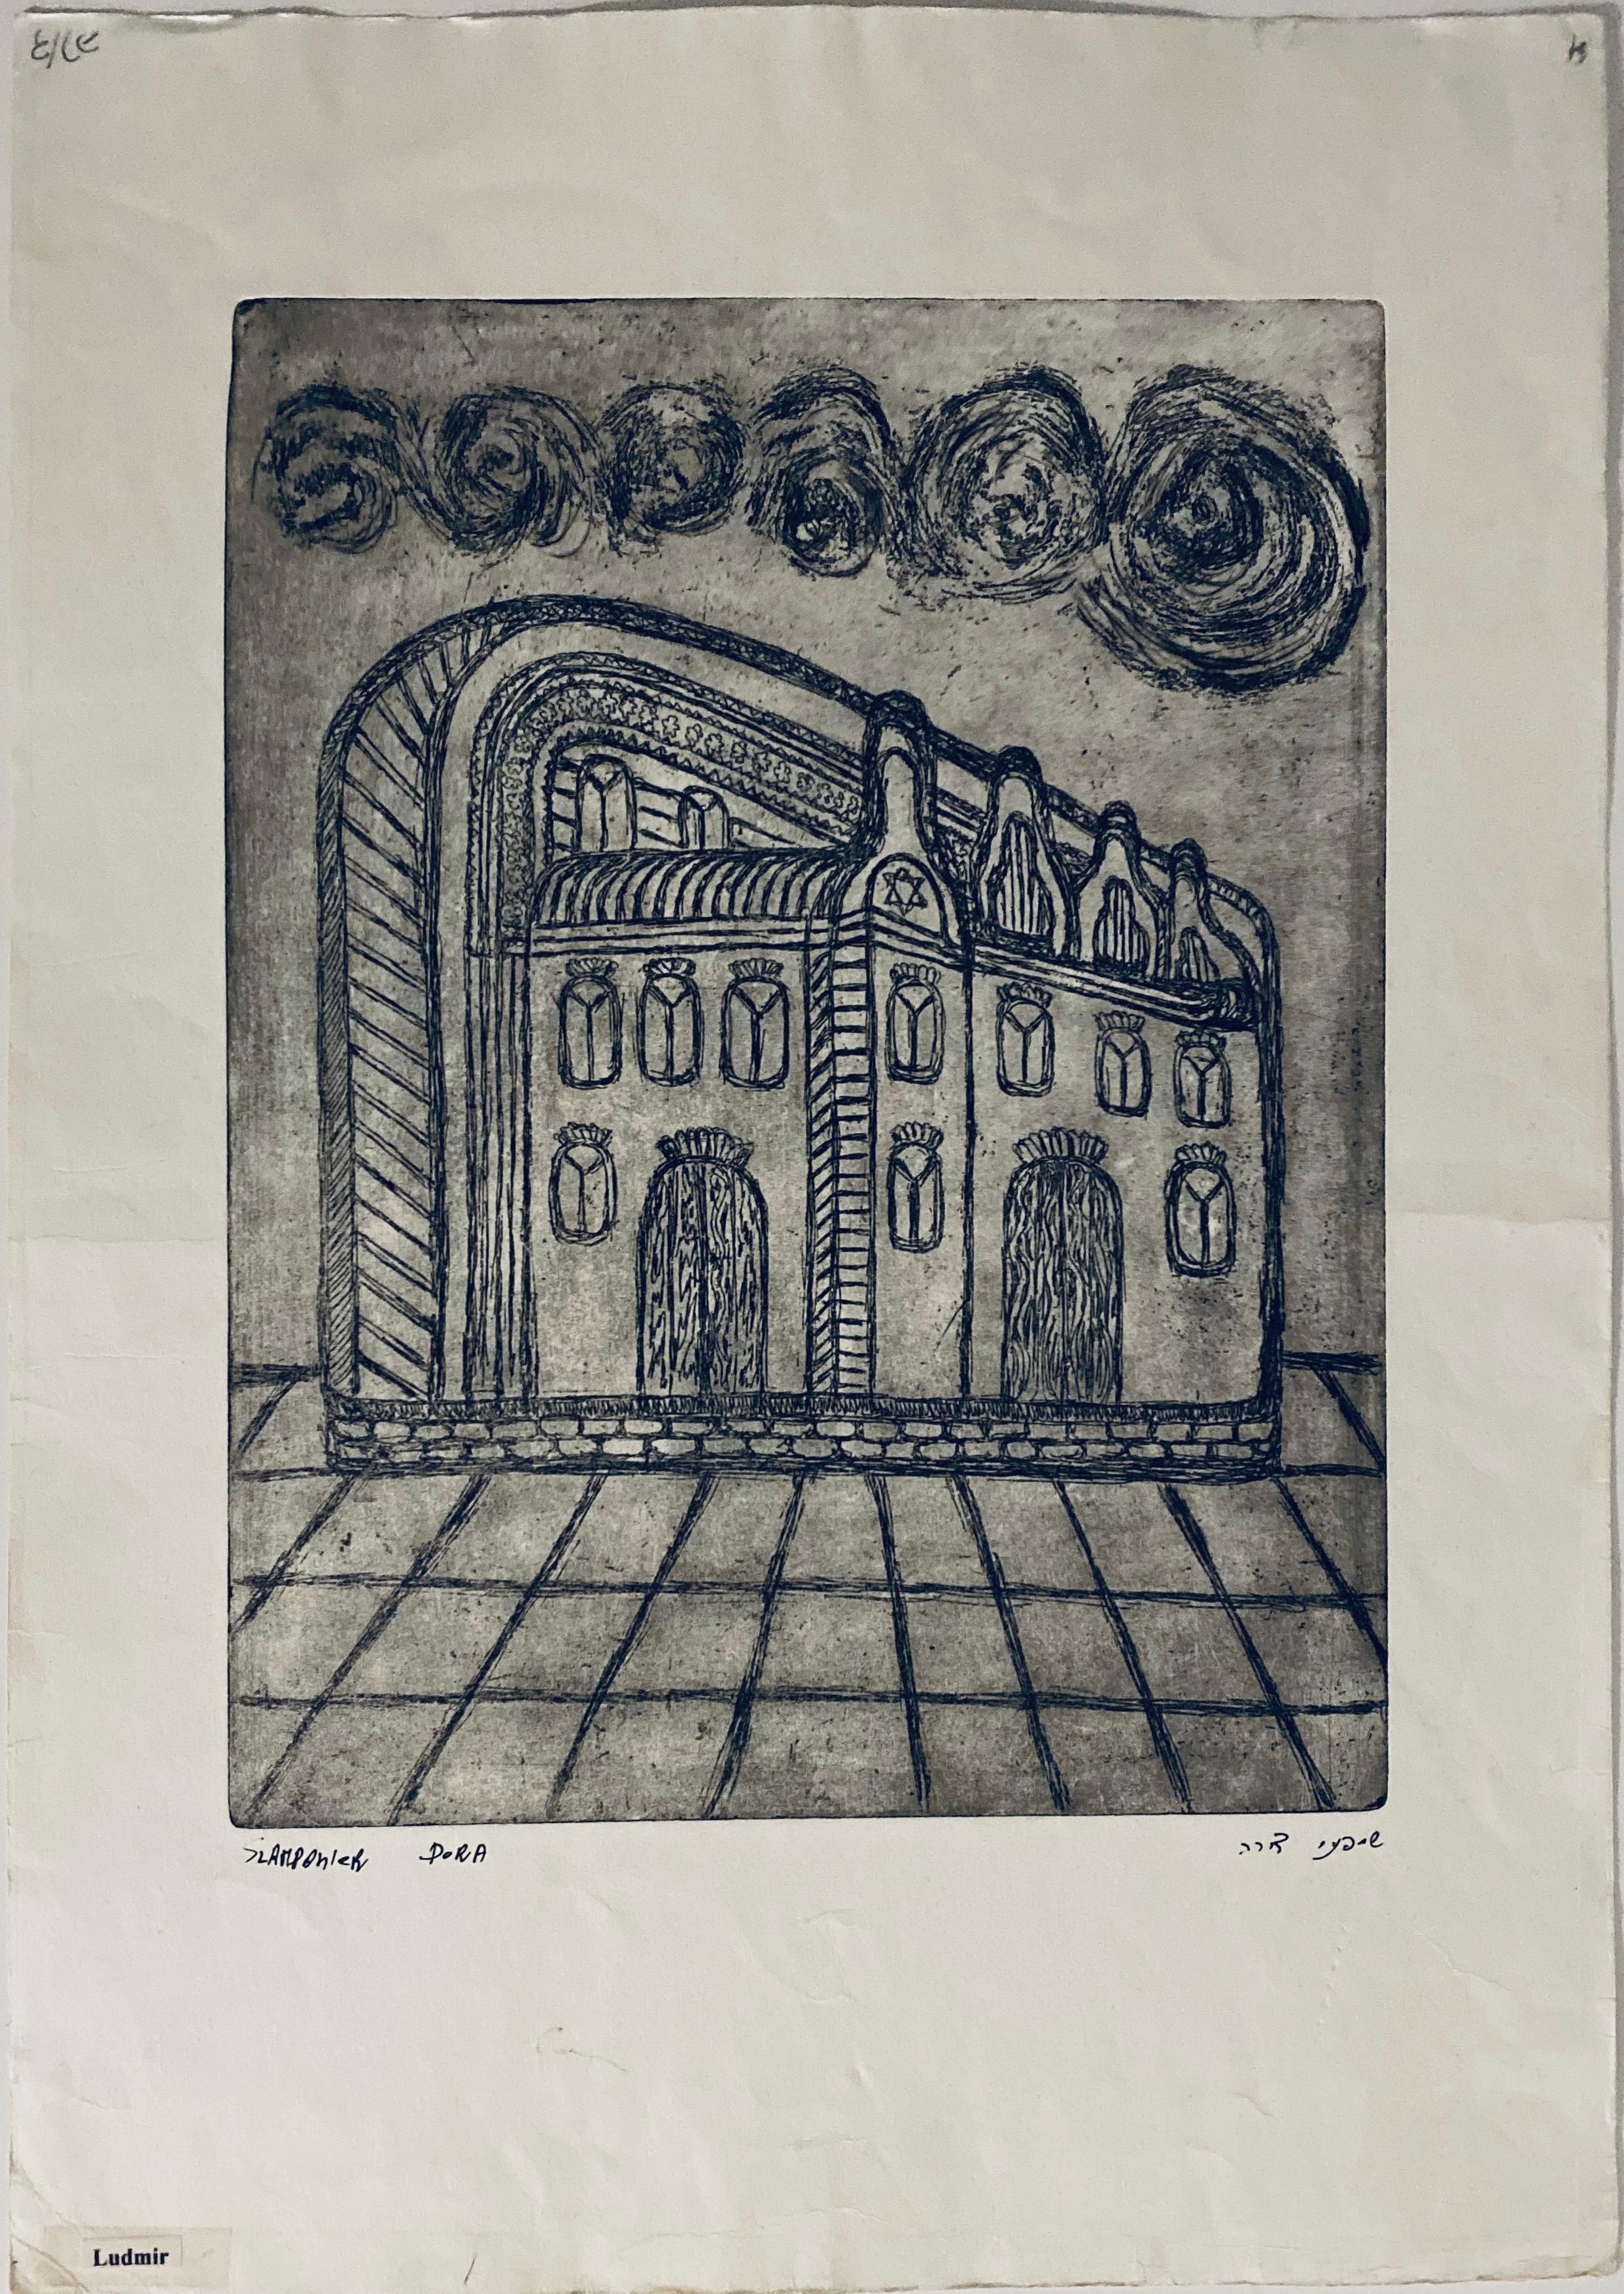 Gravure d'une synagogue détruite - Ludmir, Pologne  - Print de Dora Szampanier